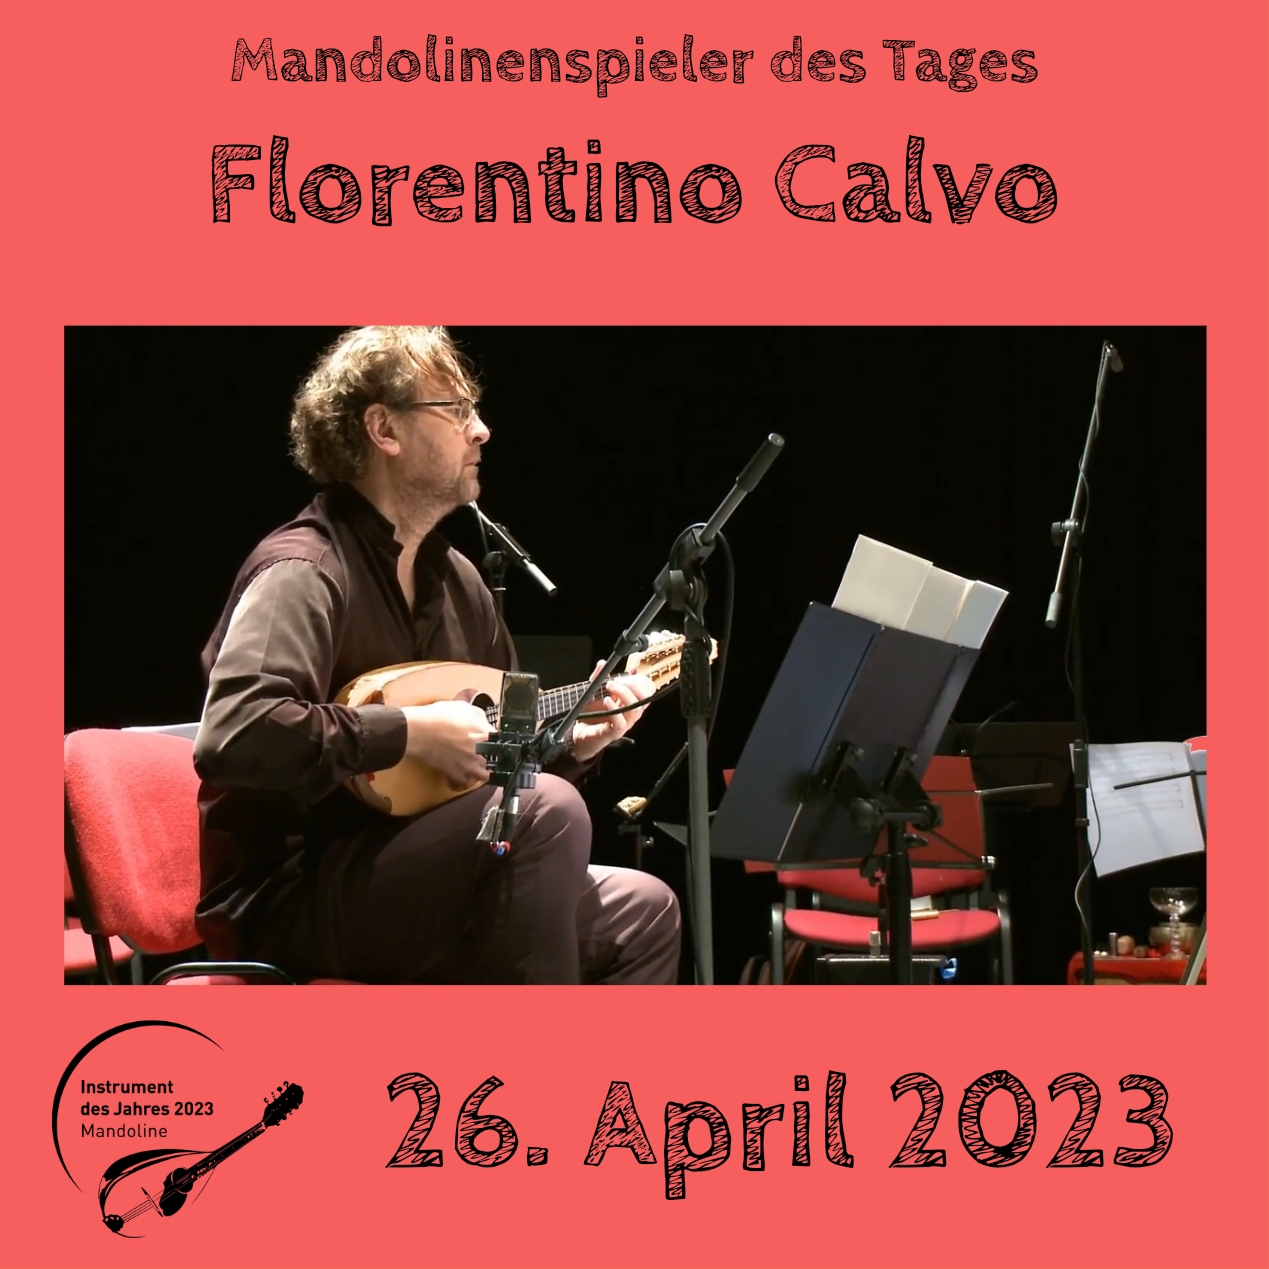 Florentino Calvo Instrument des Jahres 2023 Mandolinenspieler Mandolinenspielerin des Tages